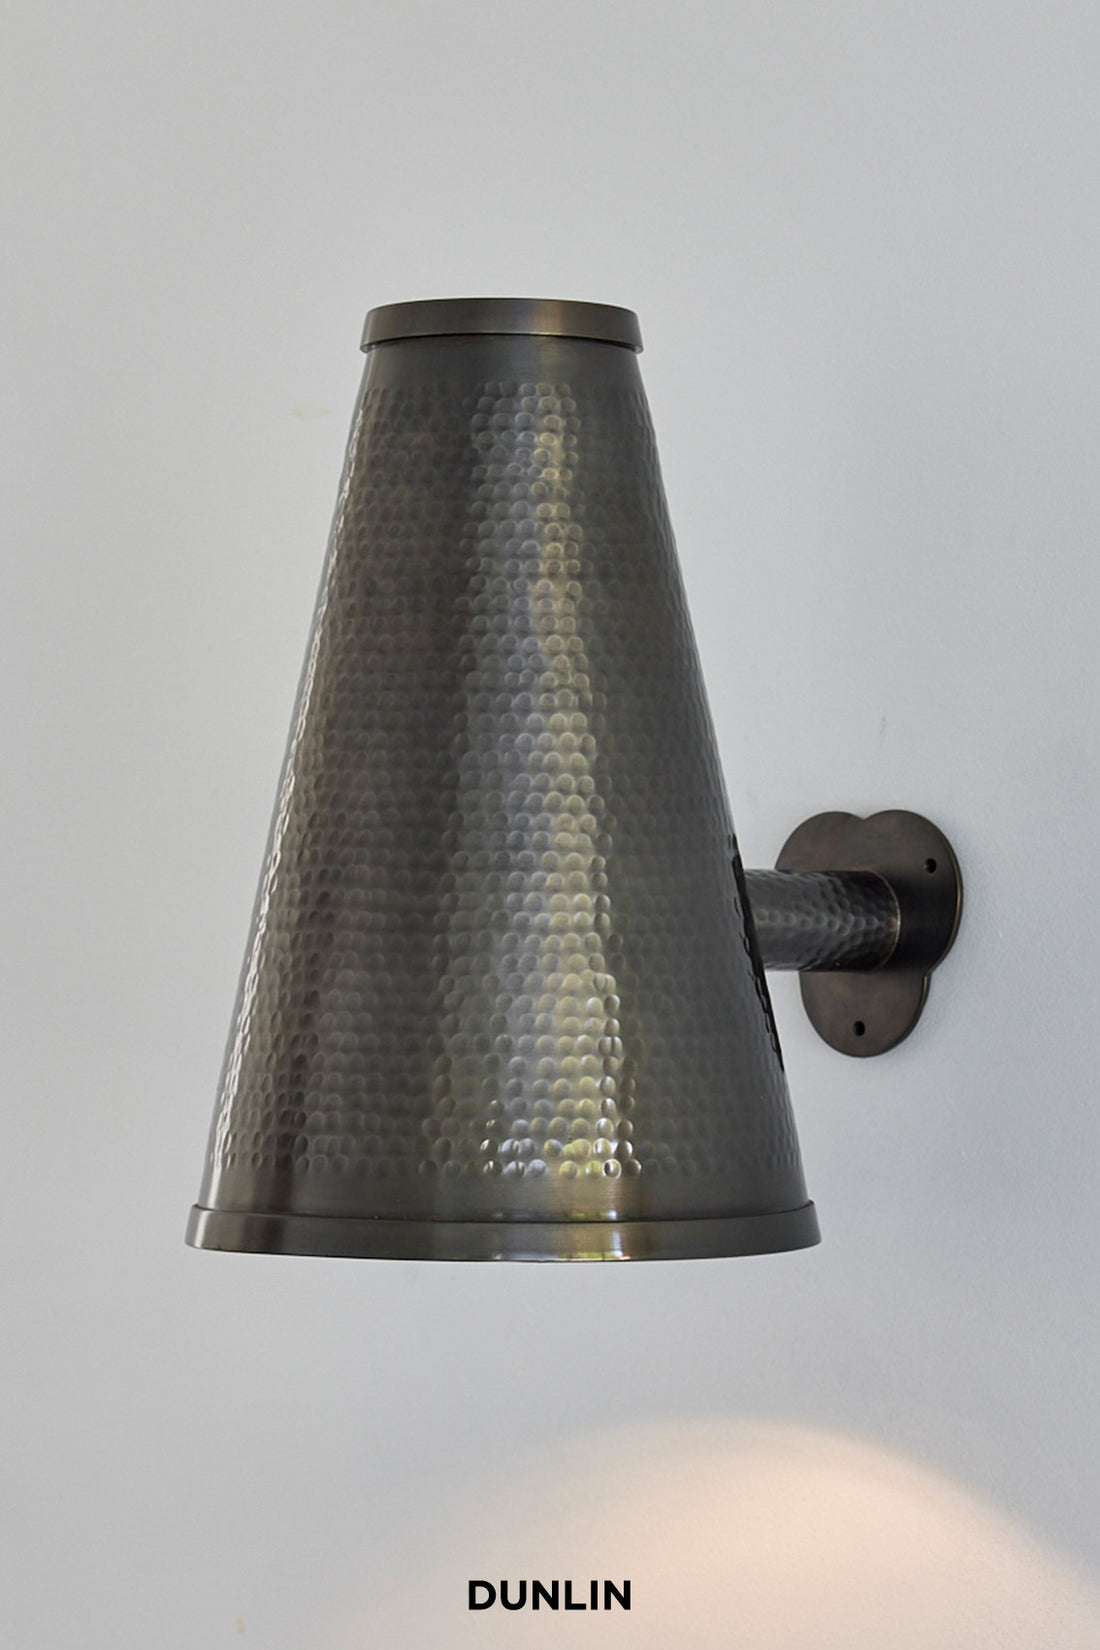 Dunlin Callot weathered Brass wall Light